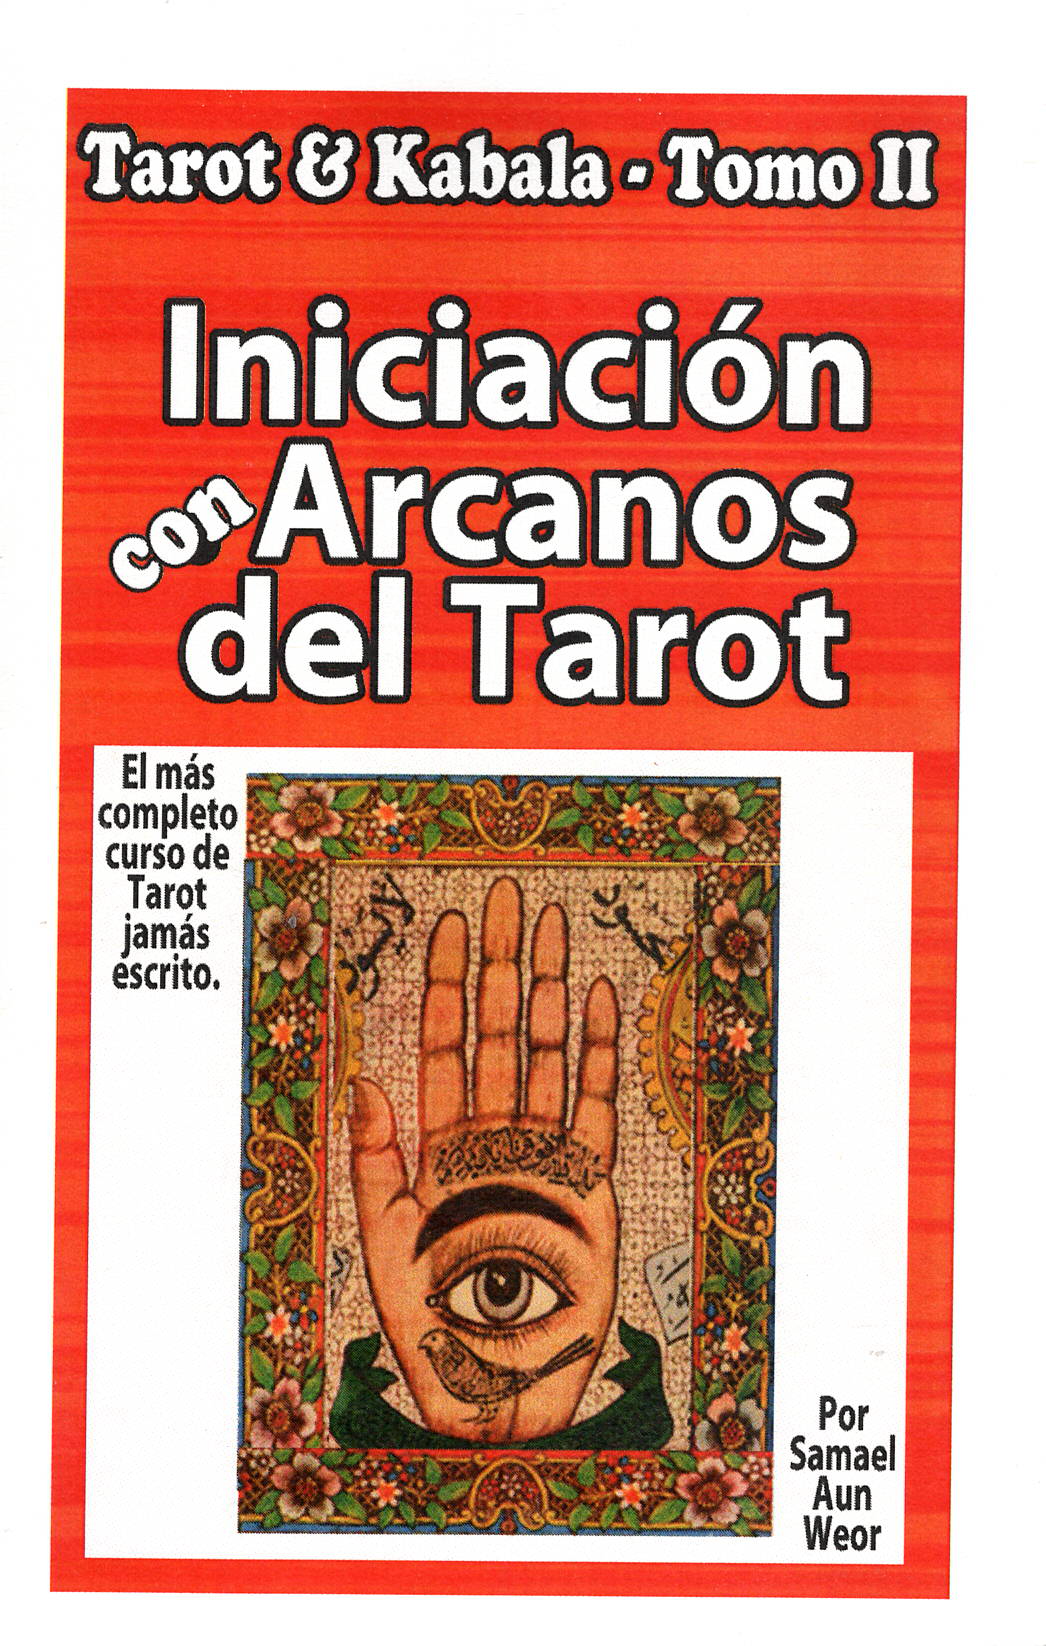 Tarot & Kabala, 2 Tomos, por Samael Aun Weor